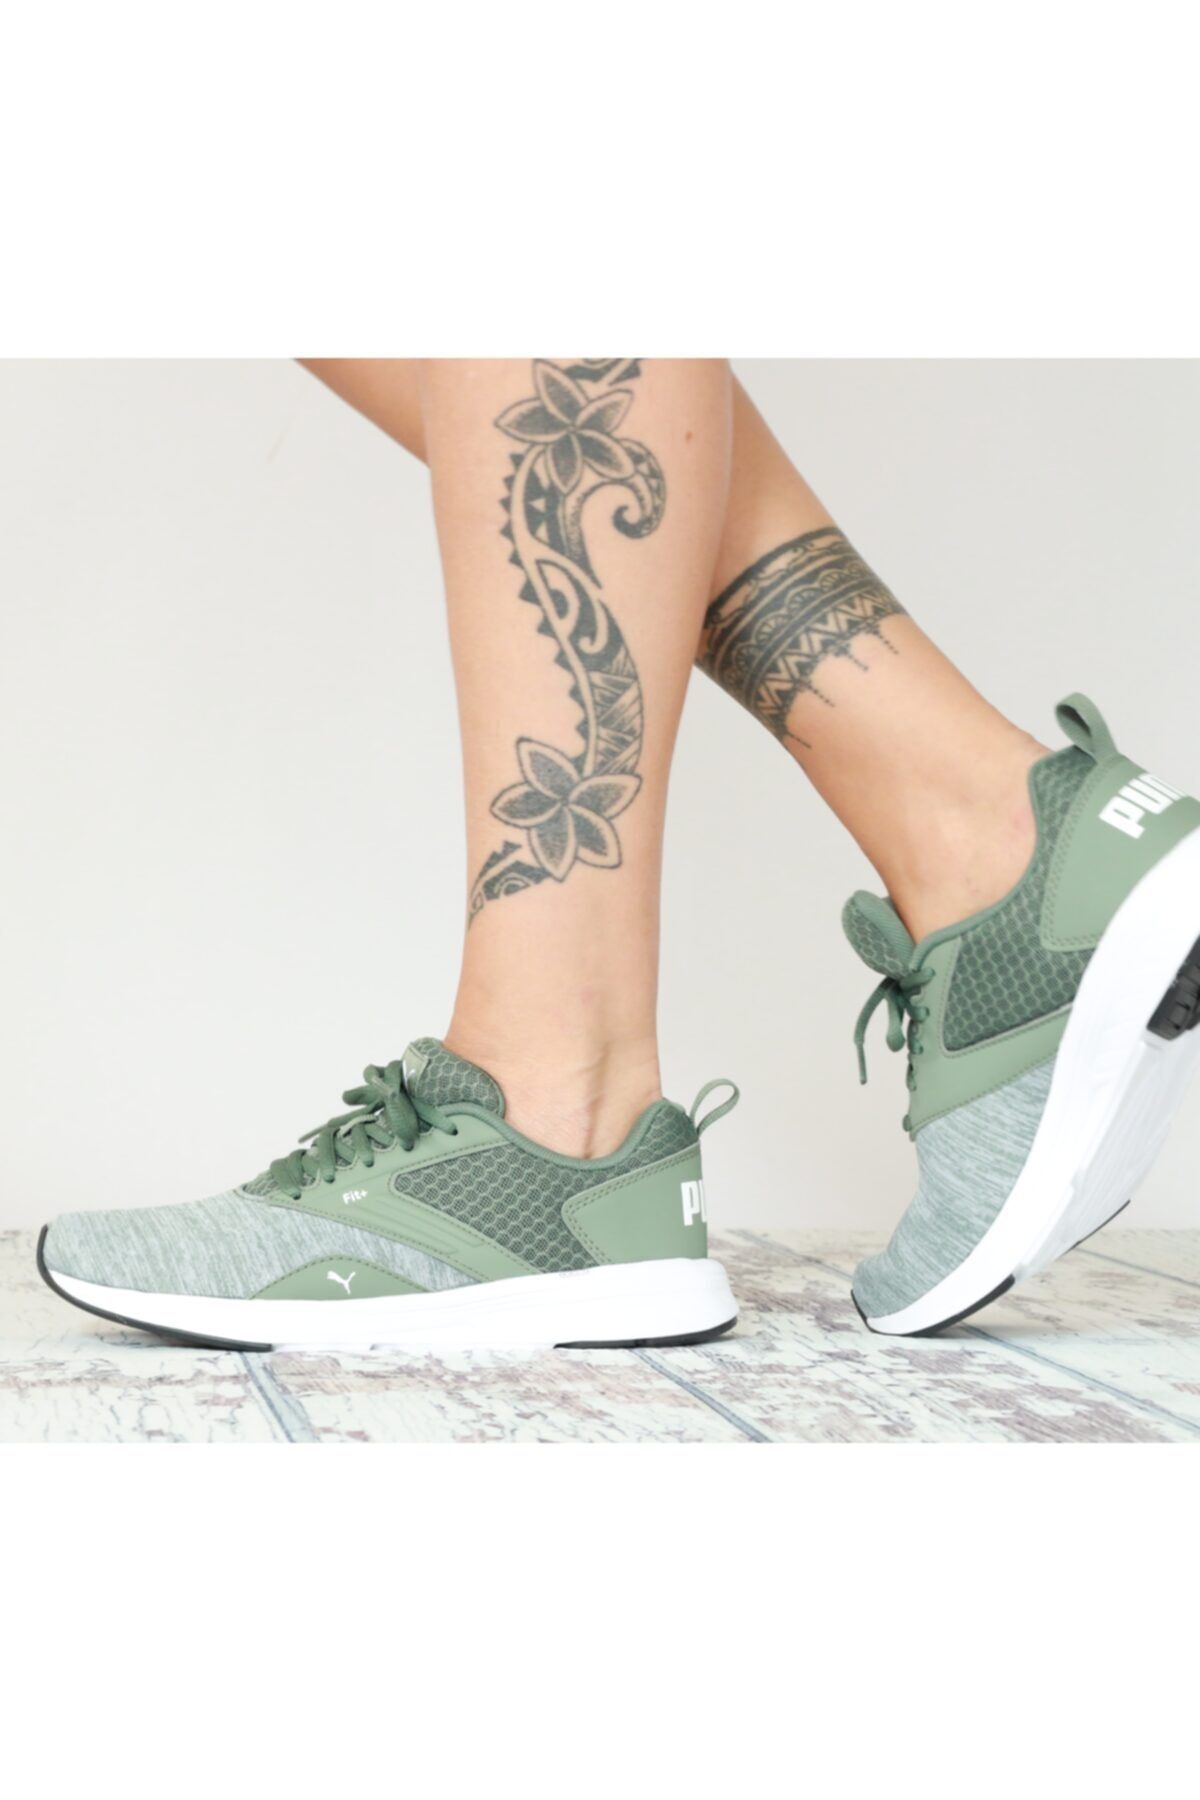 Puma NRGY COMET Yeşil Kadın Sneaker Ayakkabı 101119096